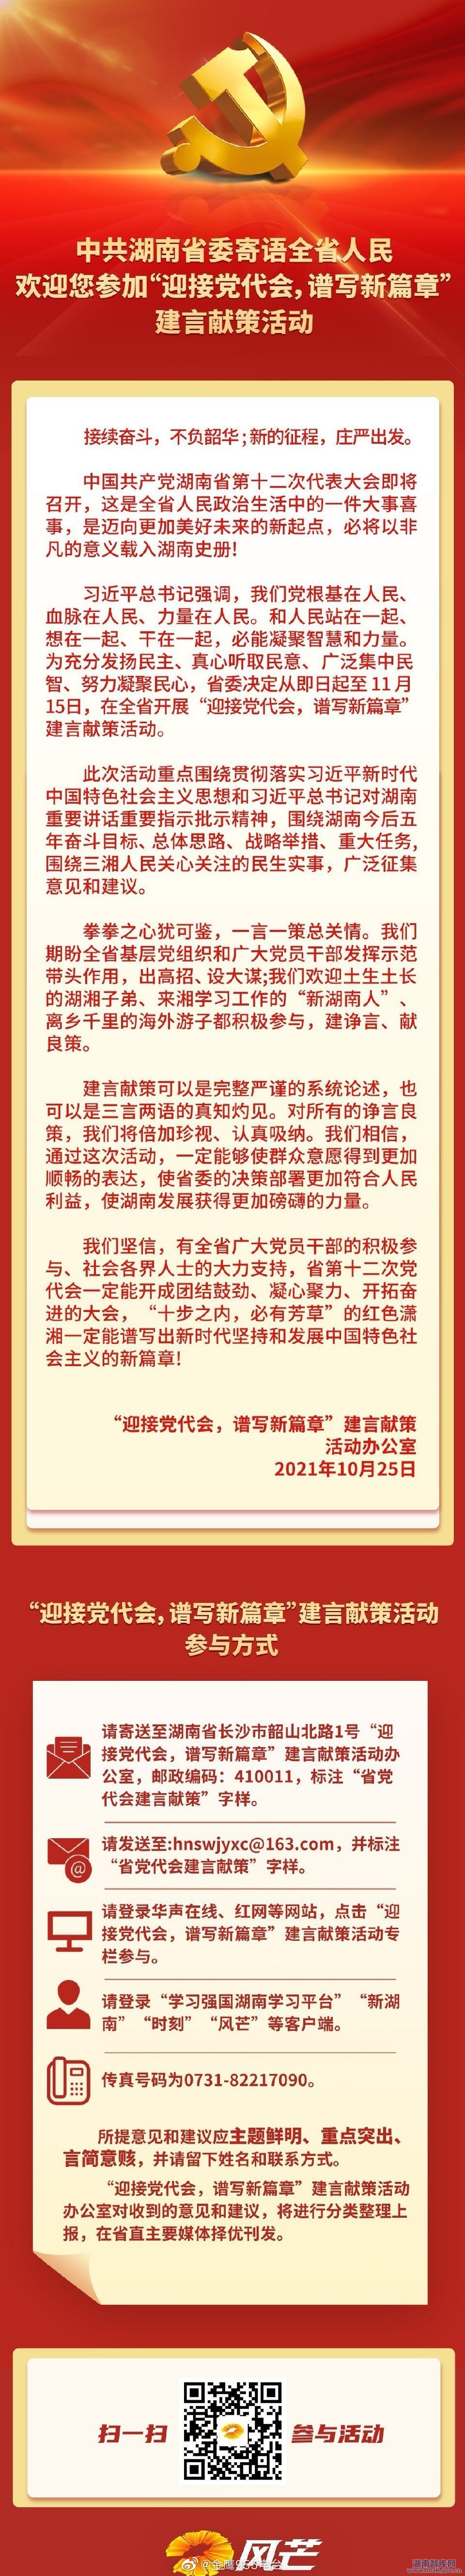 中共湖南省委邀请您为省第十二次党代会建言献策(图1)